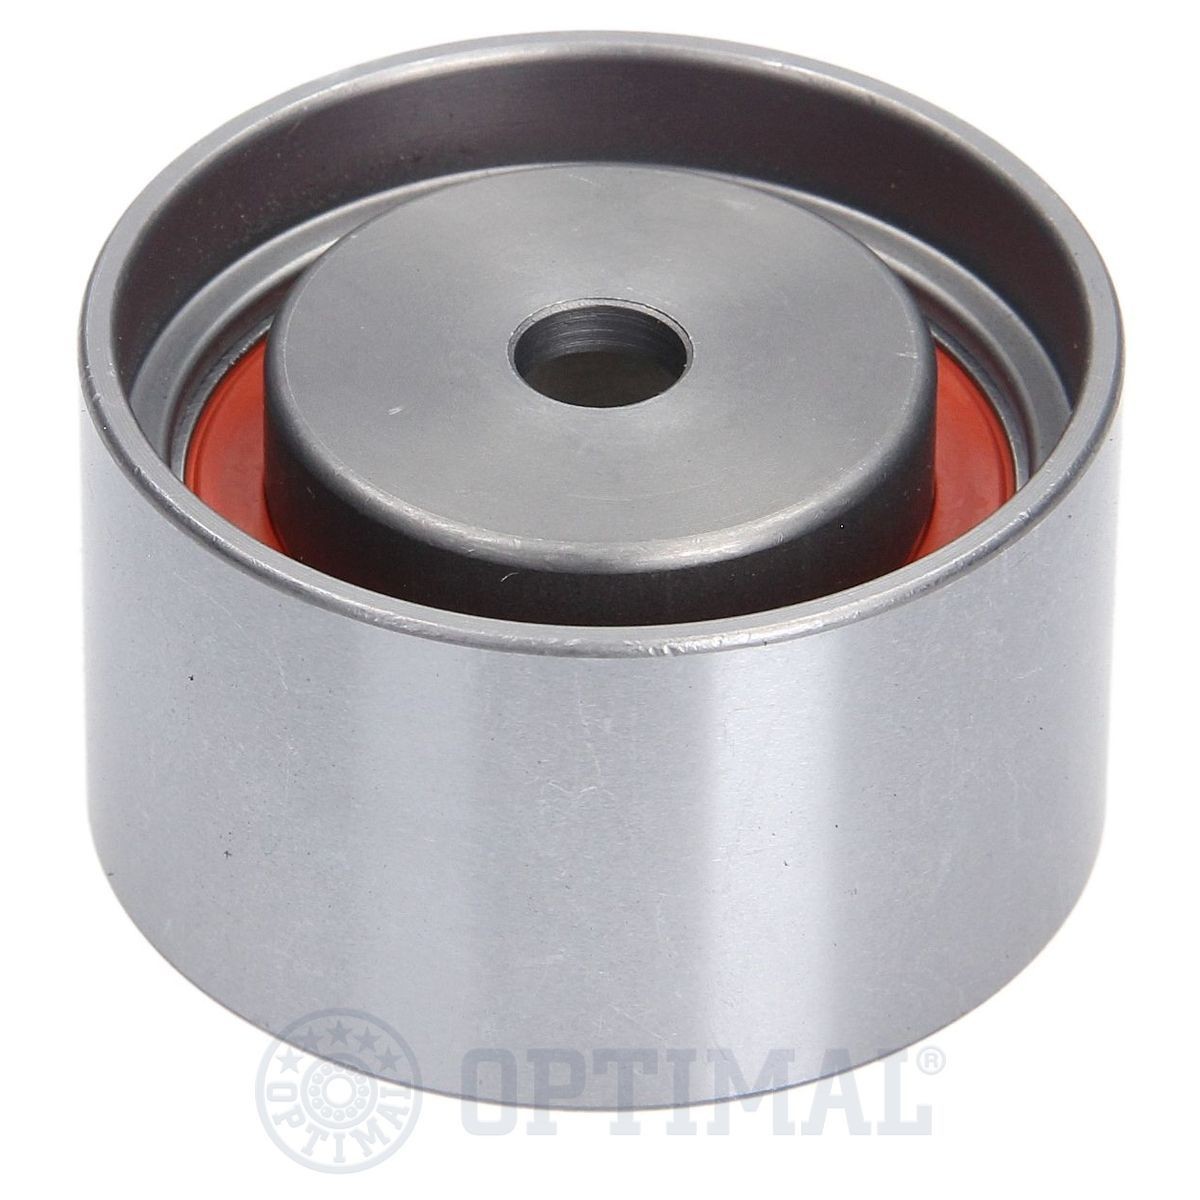 OPTIMAL 0-N1835 Timing belt tensioner pulley 05018 400AB